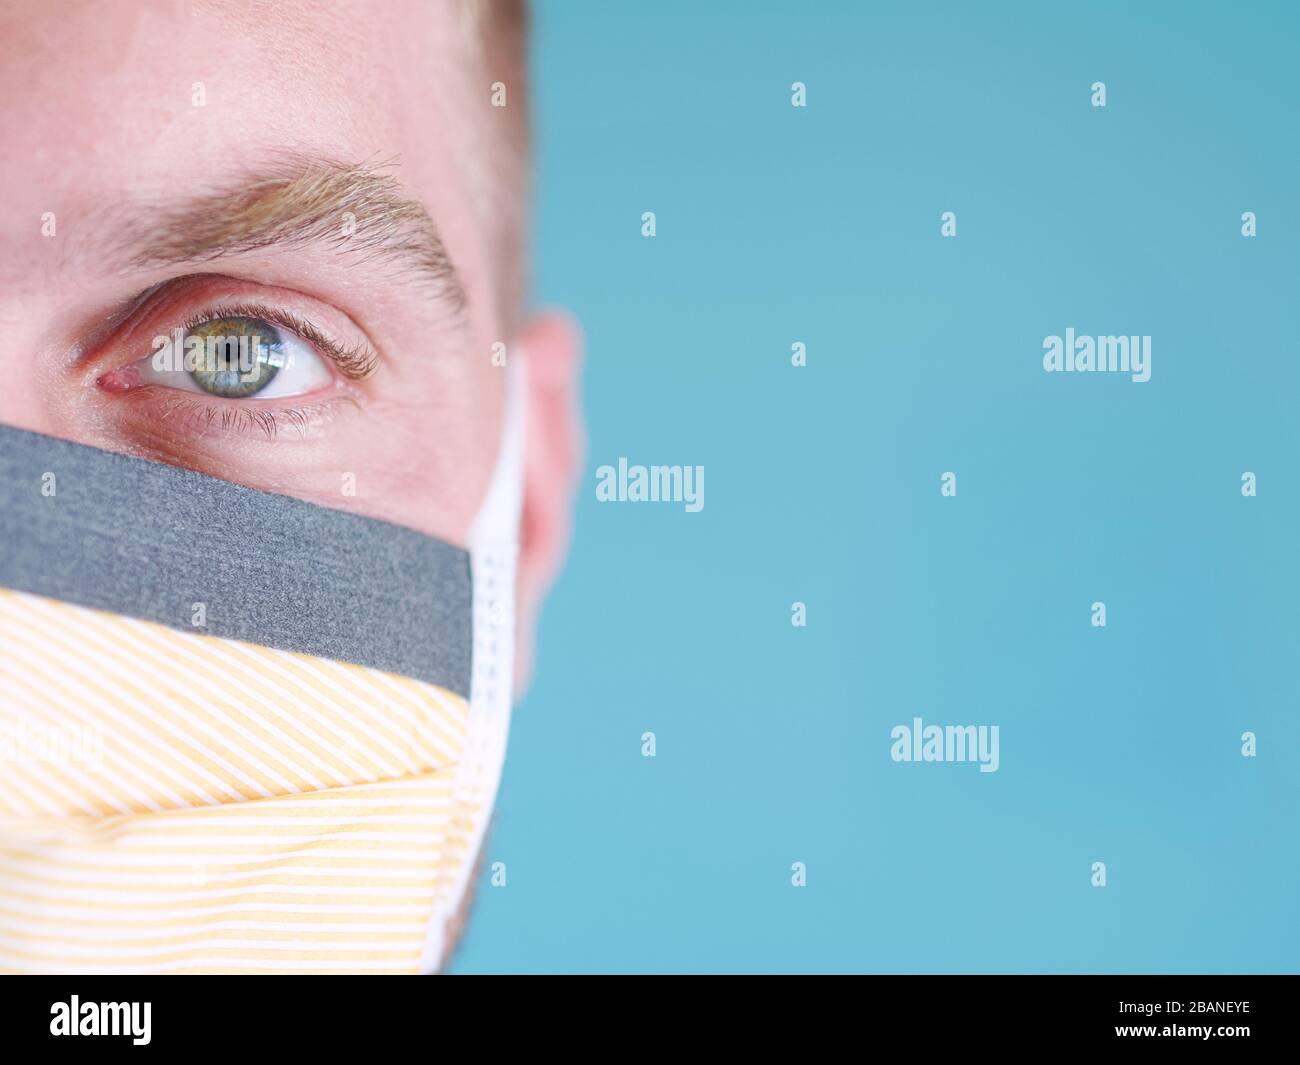 Primer plano de una cara de hombre caucásico con máscara de protección de cara amarilla con ojos verdes y pelo rubio, desde el nuevo brote de coronavirus. Foto de stock